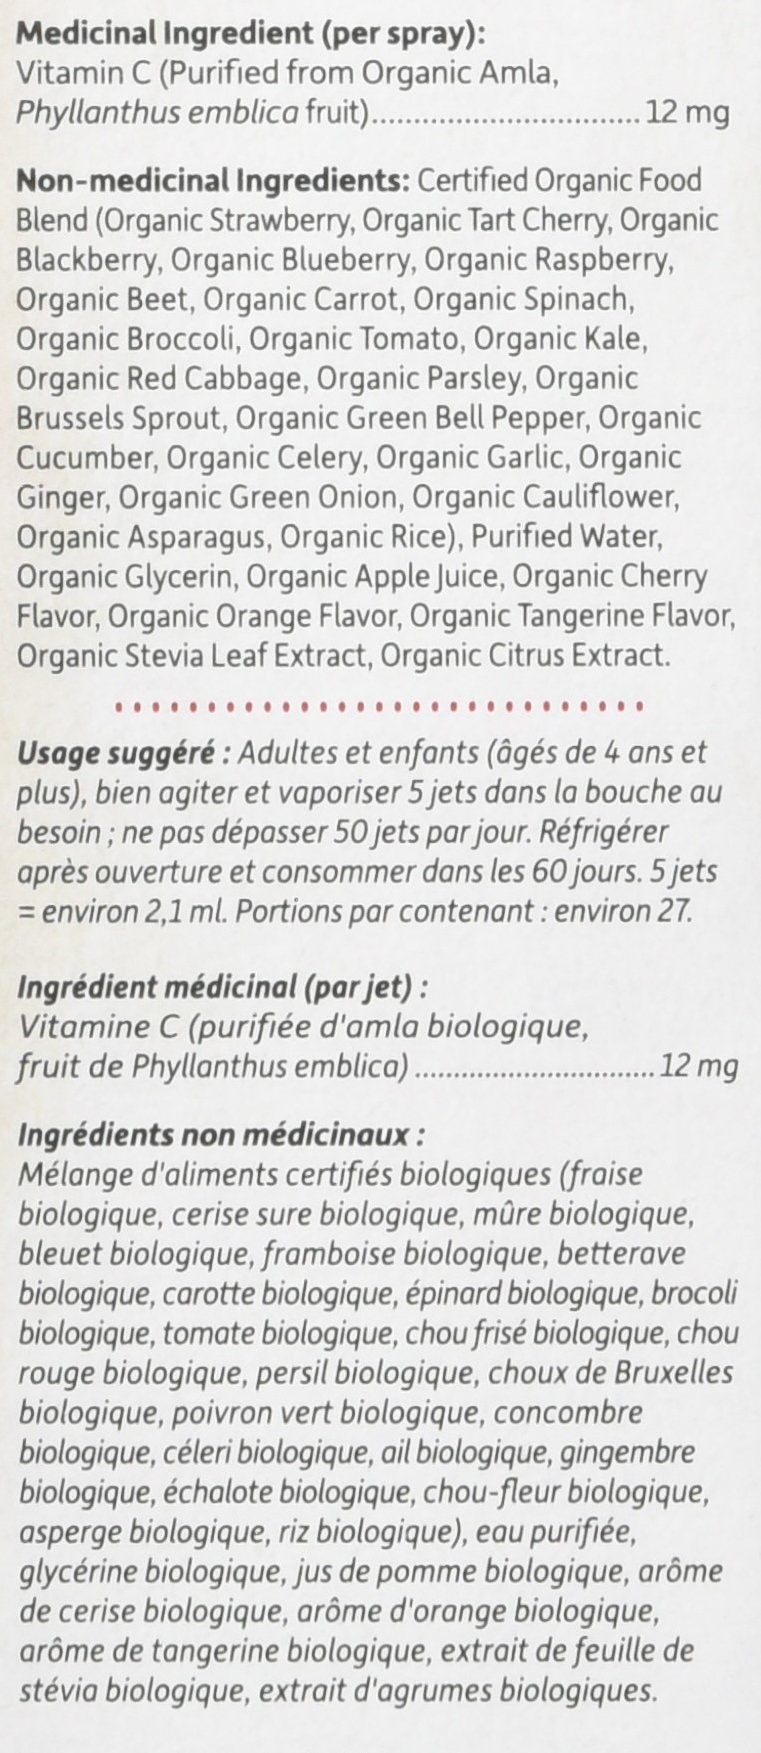 Garden of Life mykind Organics Vitamin C Organic Spray Cherry-Tangerine, 58 ml, (Pack of 1) - BeesActive Australia